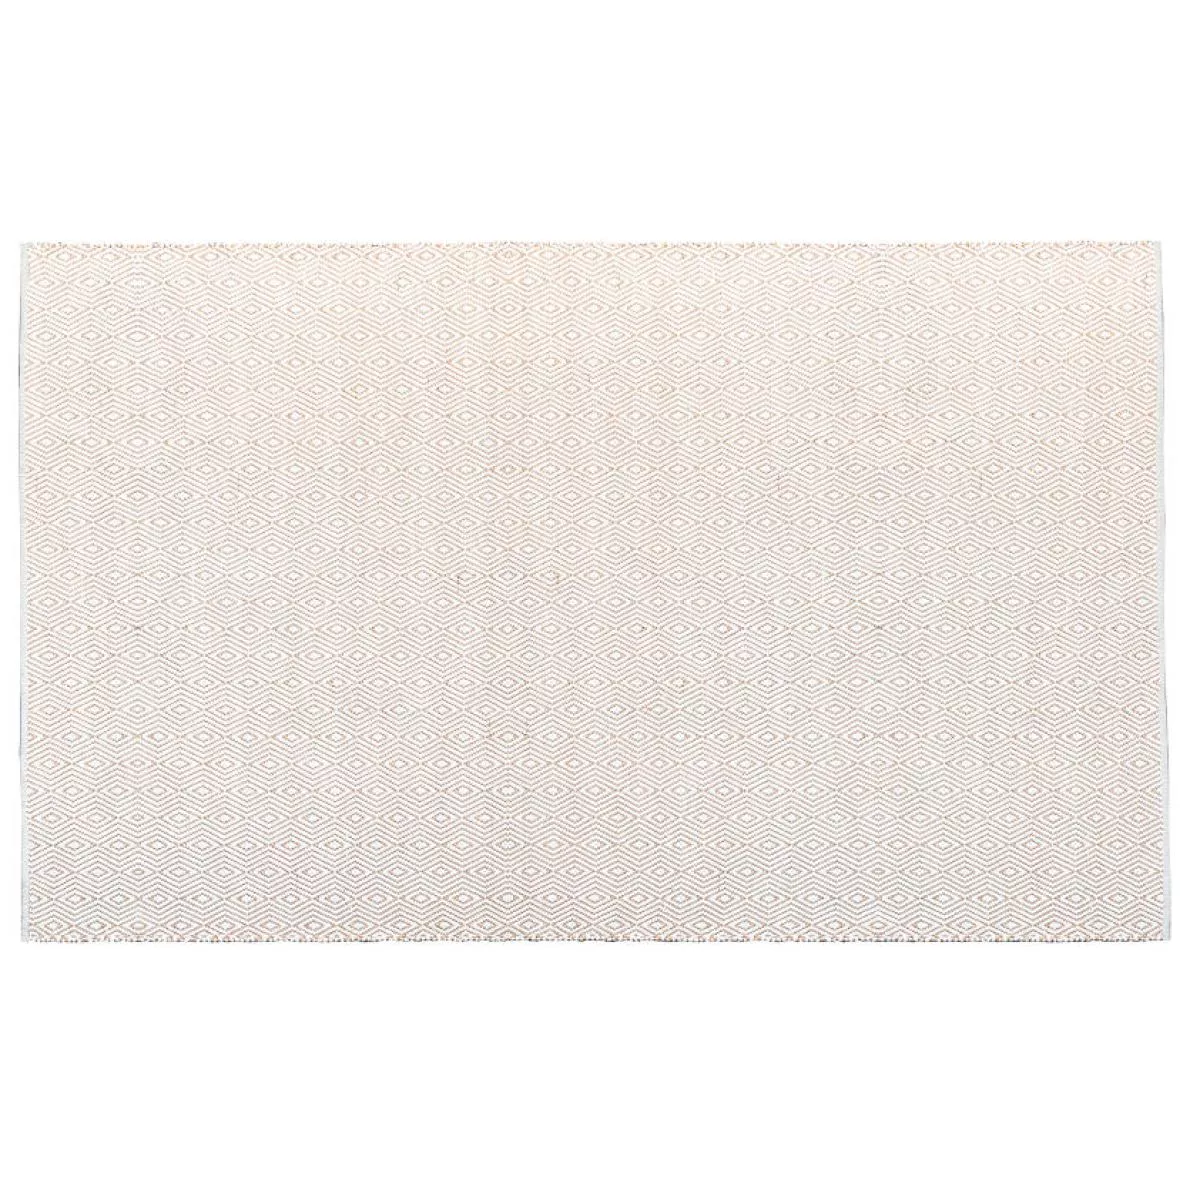 White version: Handgewebter Teppich "Argola Liso" aus Wolle und Kork